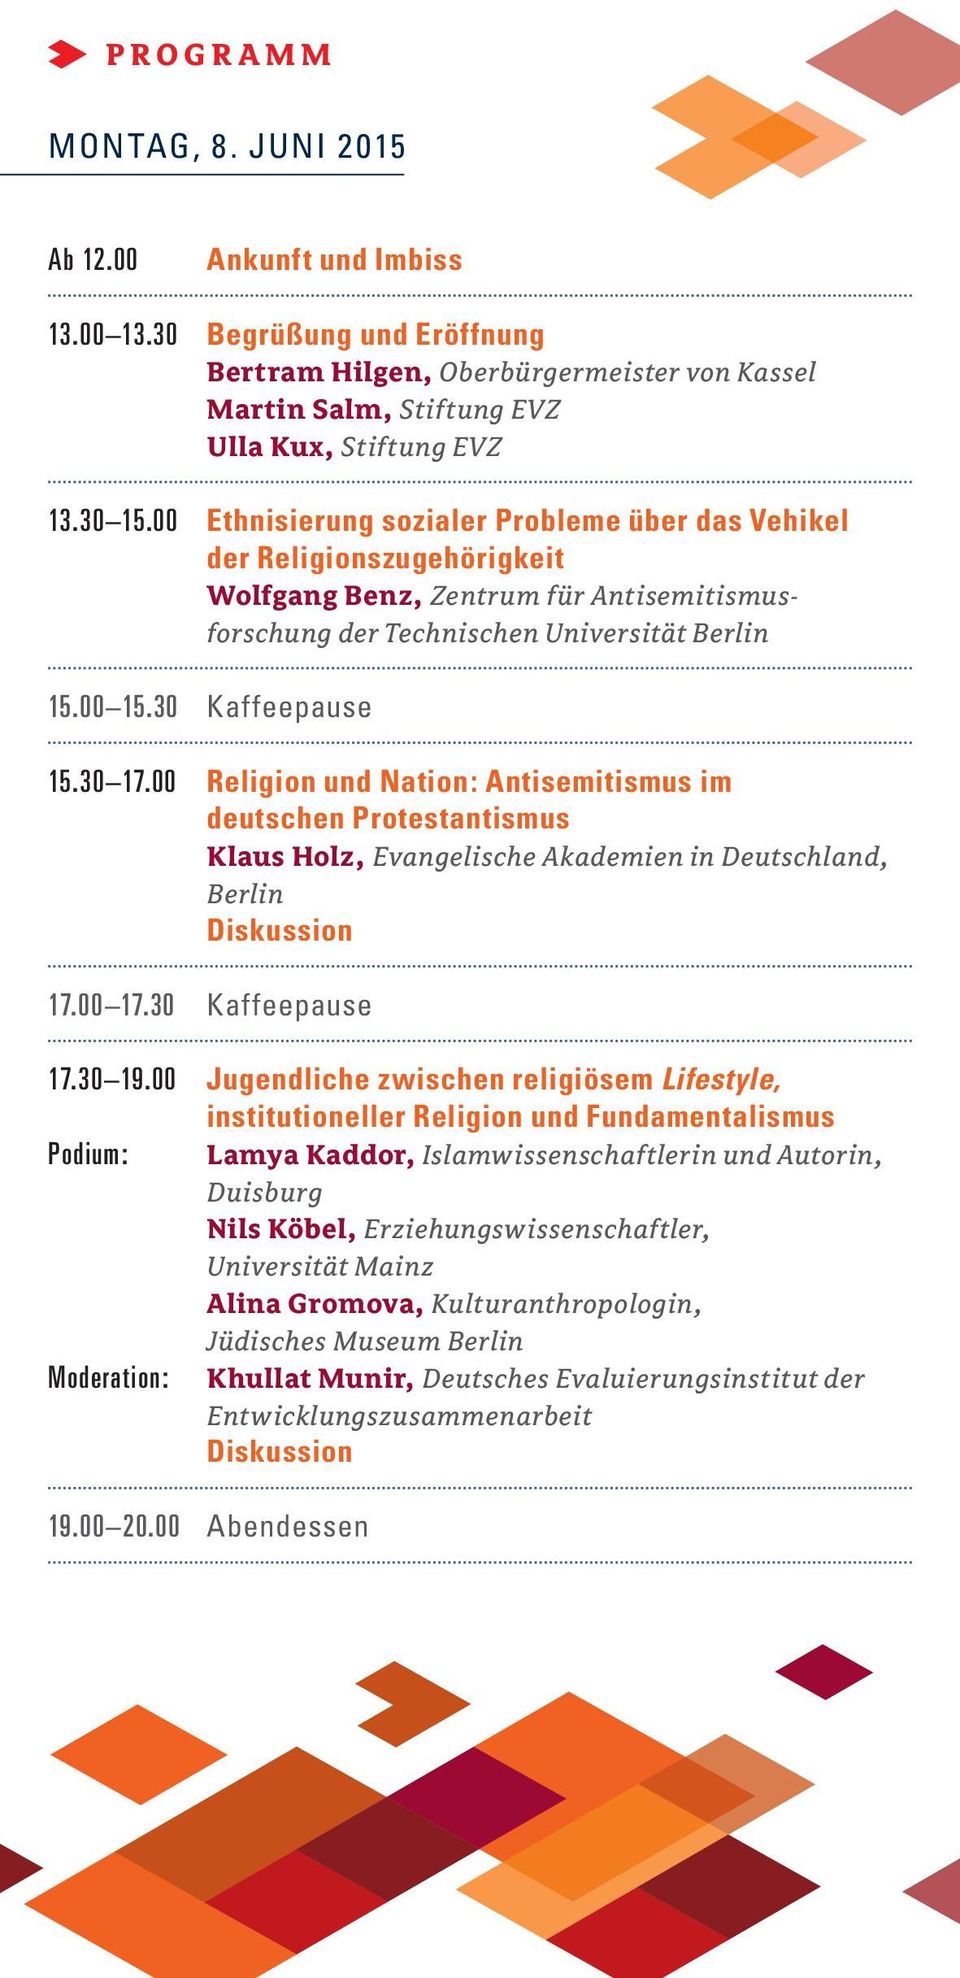 00 religion und nation: Antisemitismus im deutschen Protestantismus Klaus holz, Evangelische Akademien in Deutschland, Berlin diskussion 17.00 17.30 kaffeepause 17.30 19.